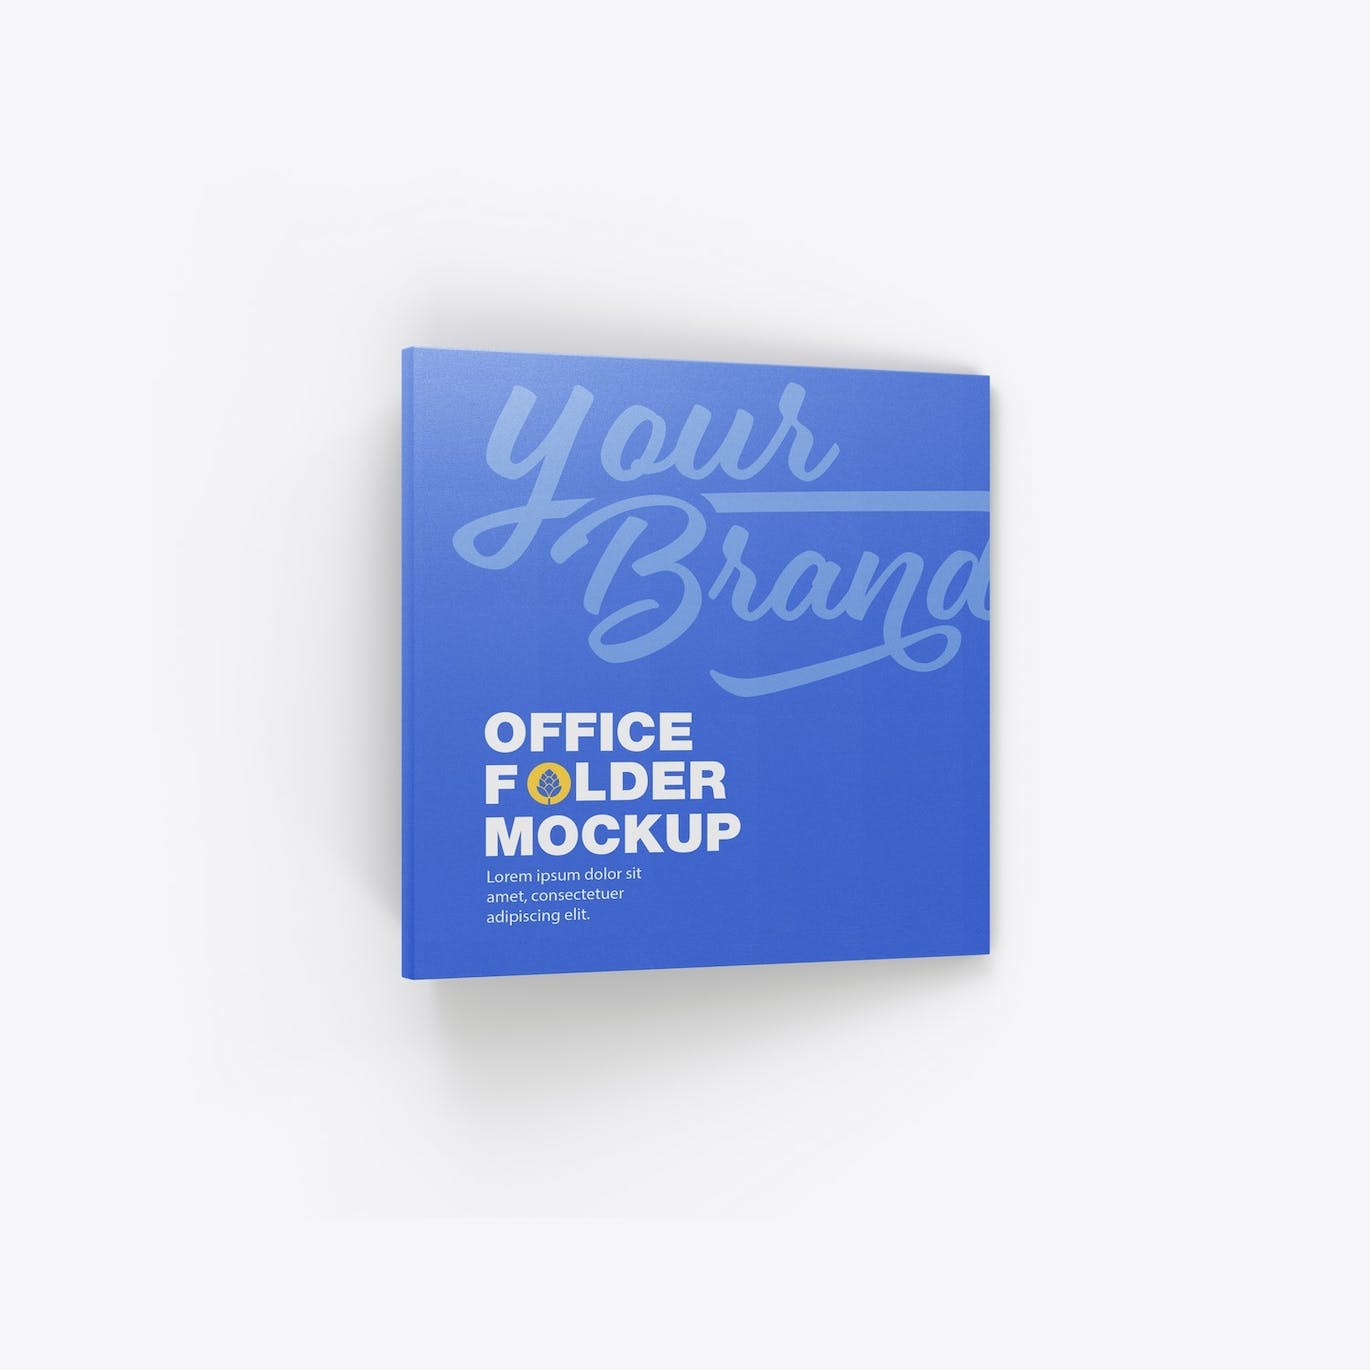 纸质办公文件夹设计样机模板 Paper Office Folder Mockup 样机素材 第5张